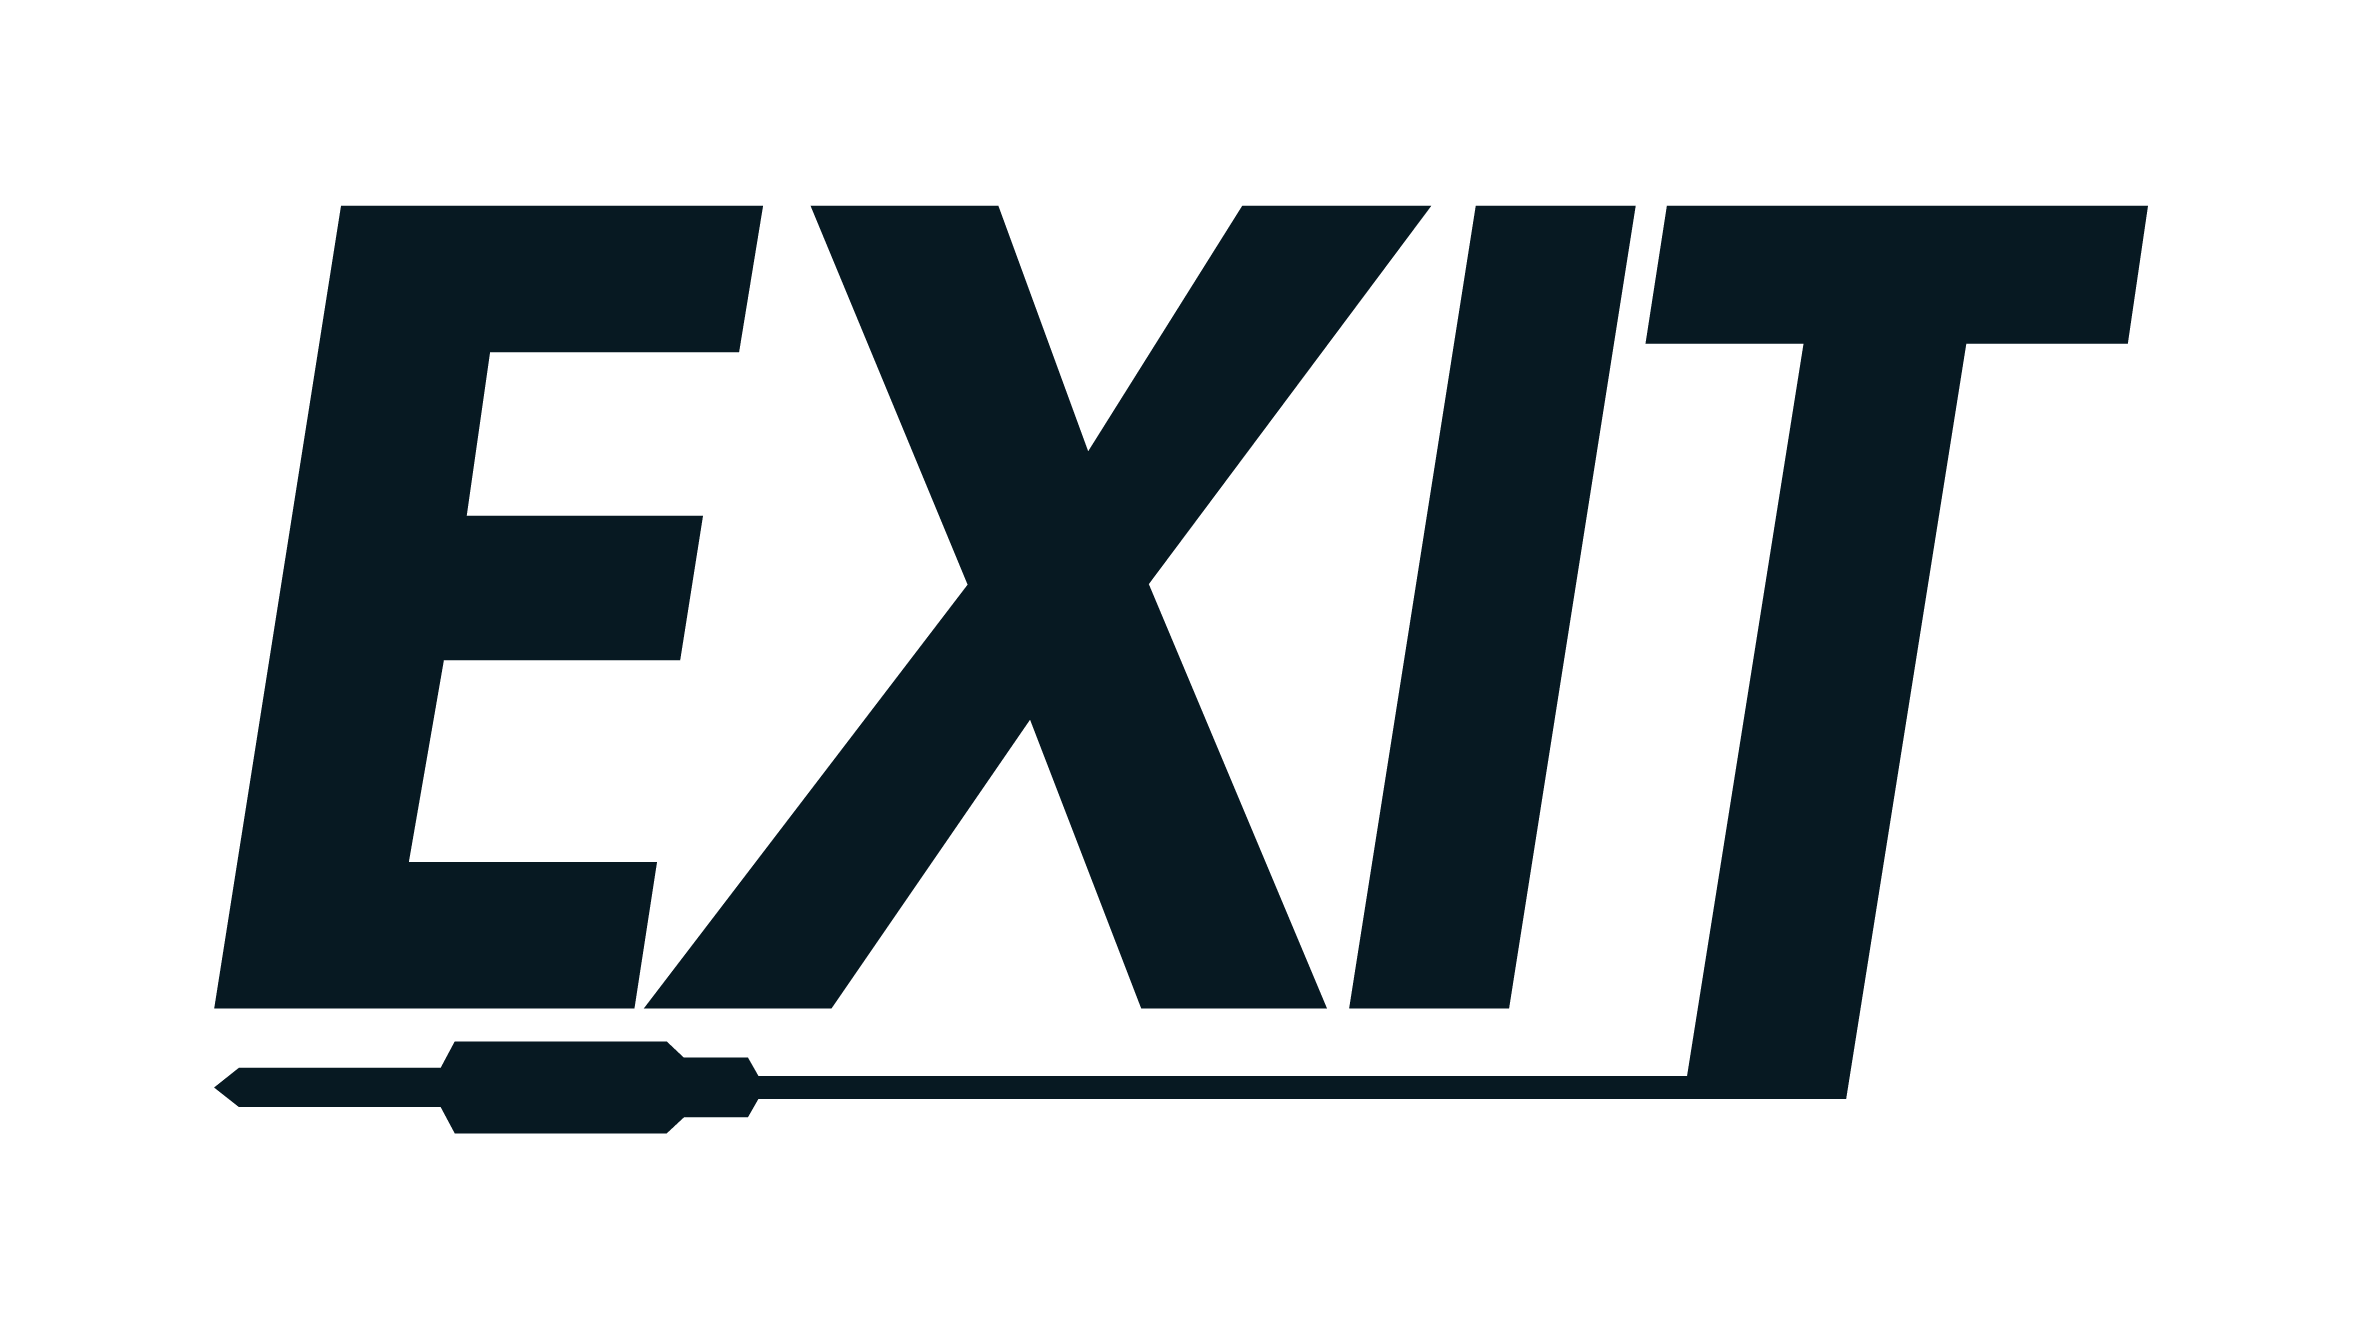 Exit   logo   21 11 04 exit 1